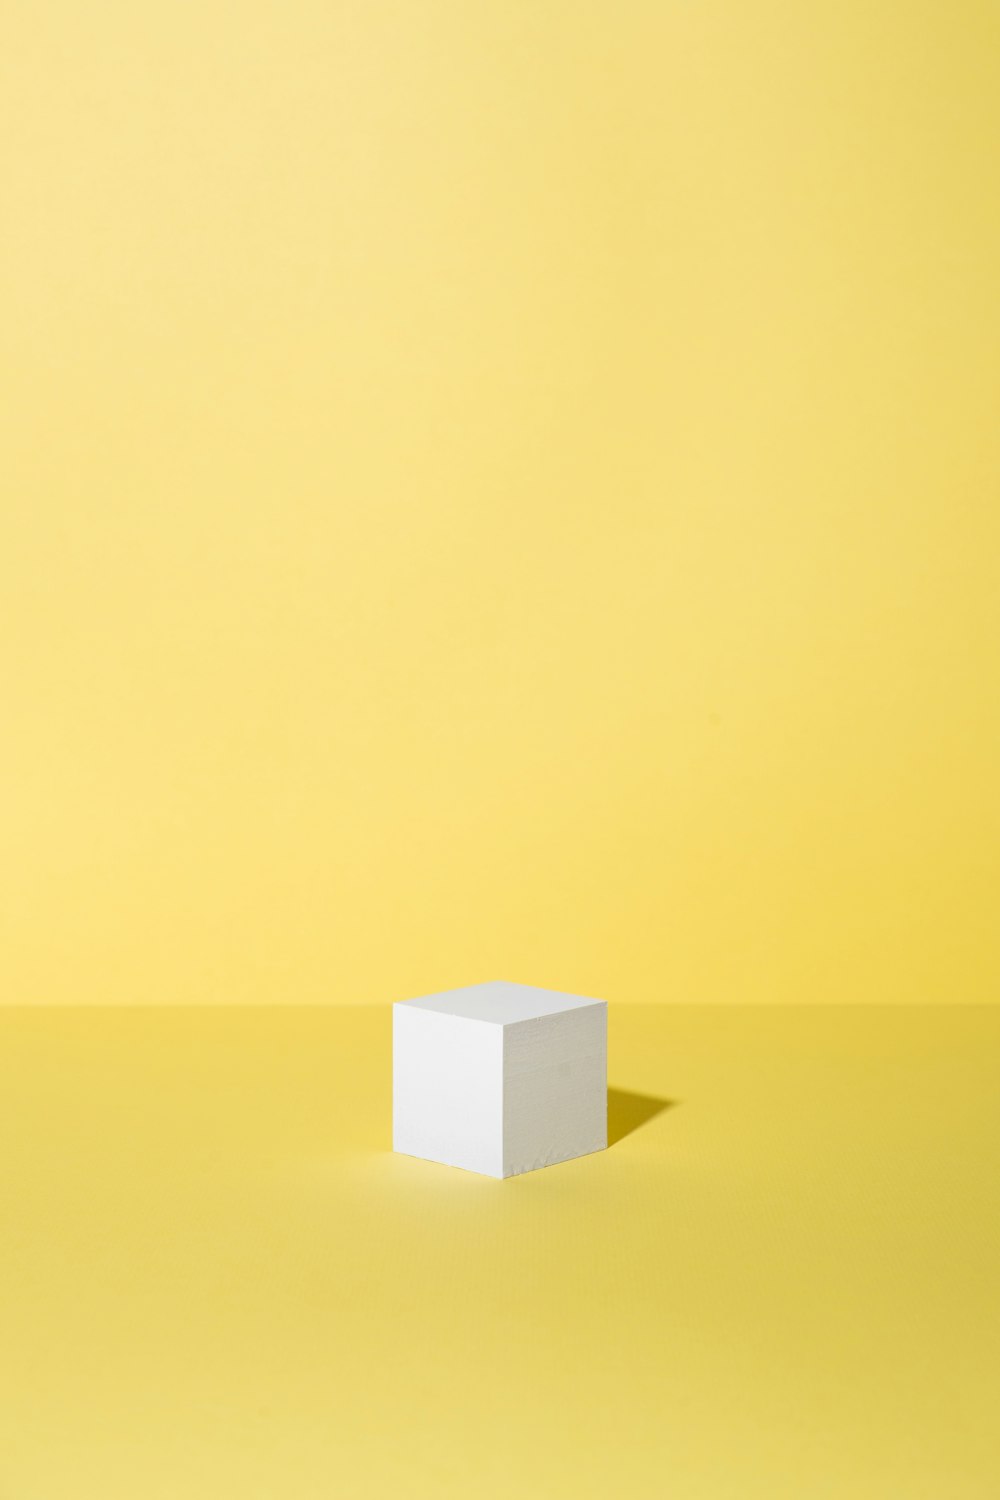 黄色の背景に白いボックス